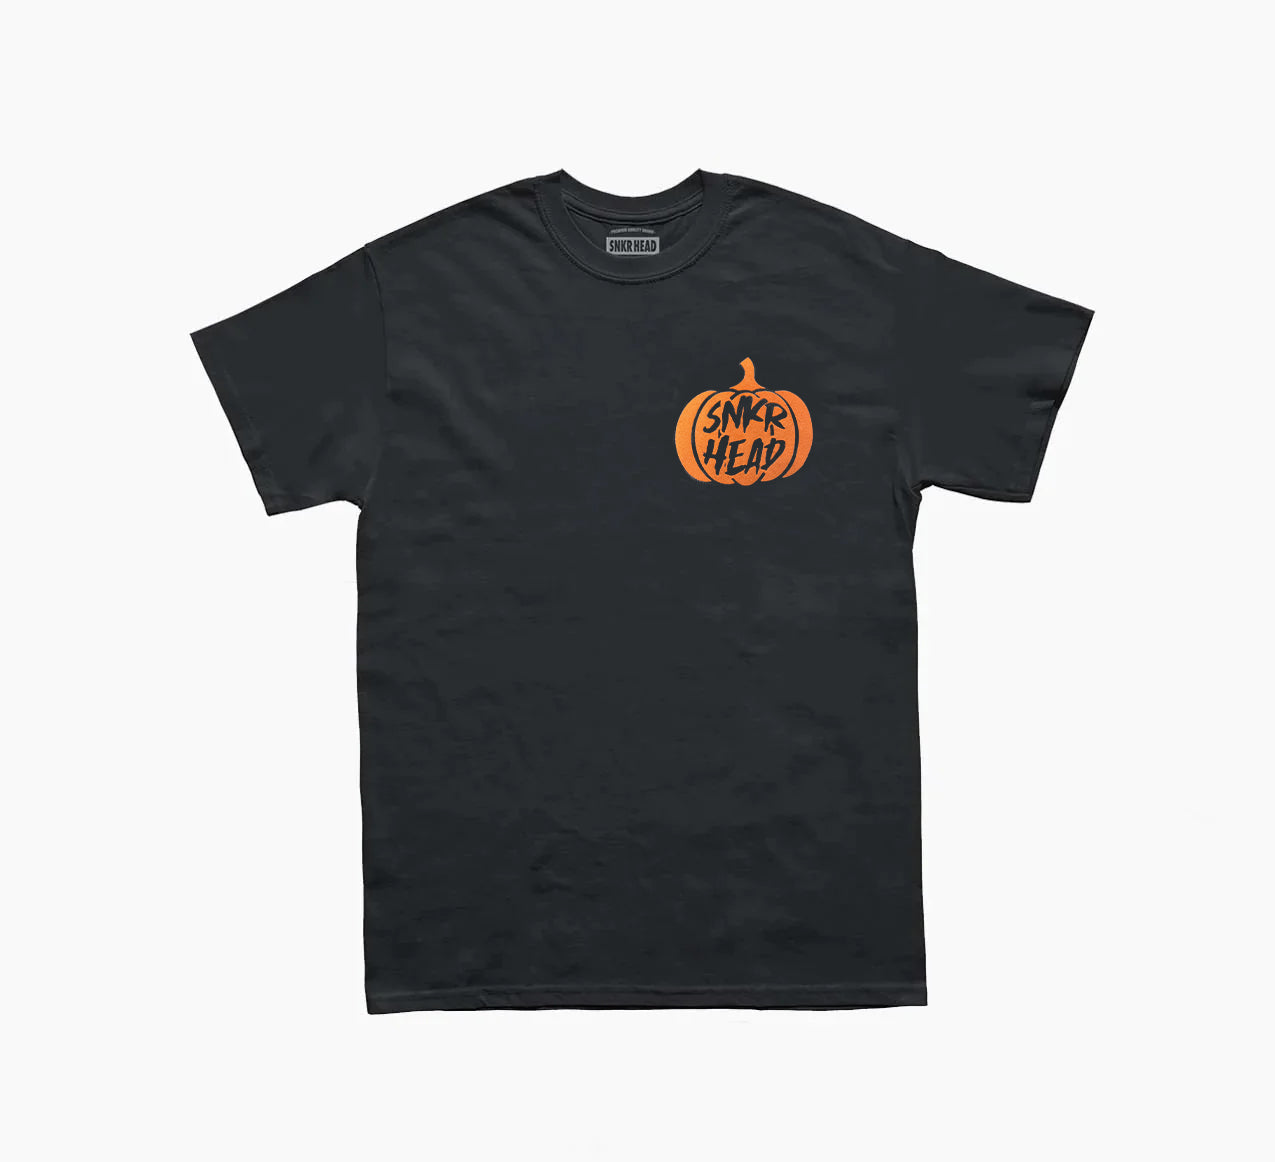 SNKR HEAD Fuzzy Pumpkin T-shirt